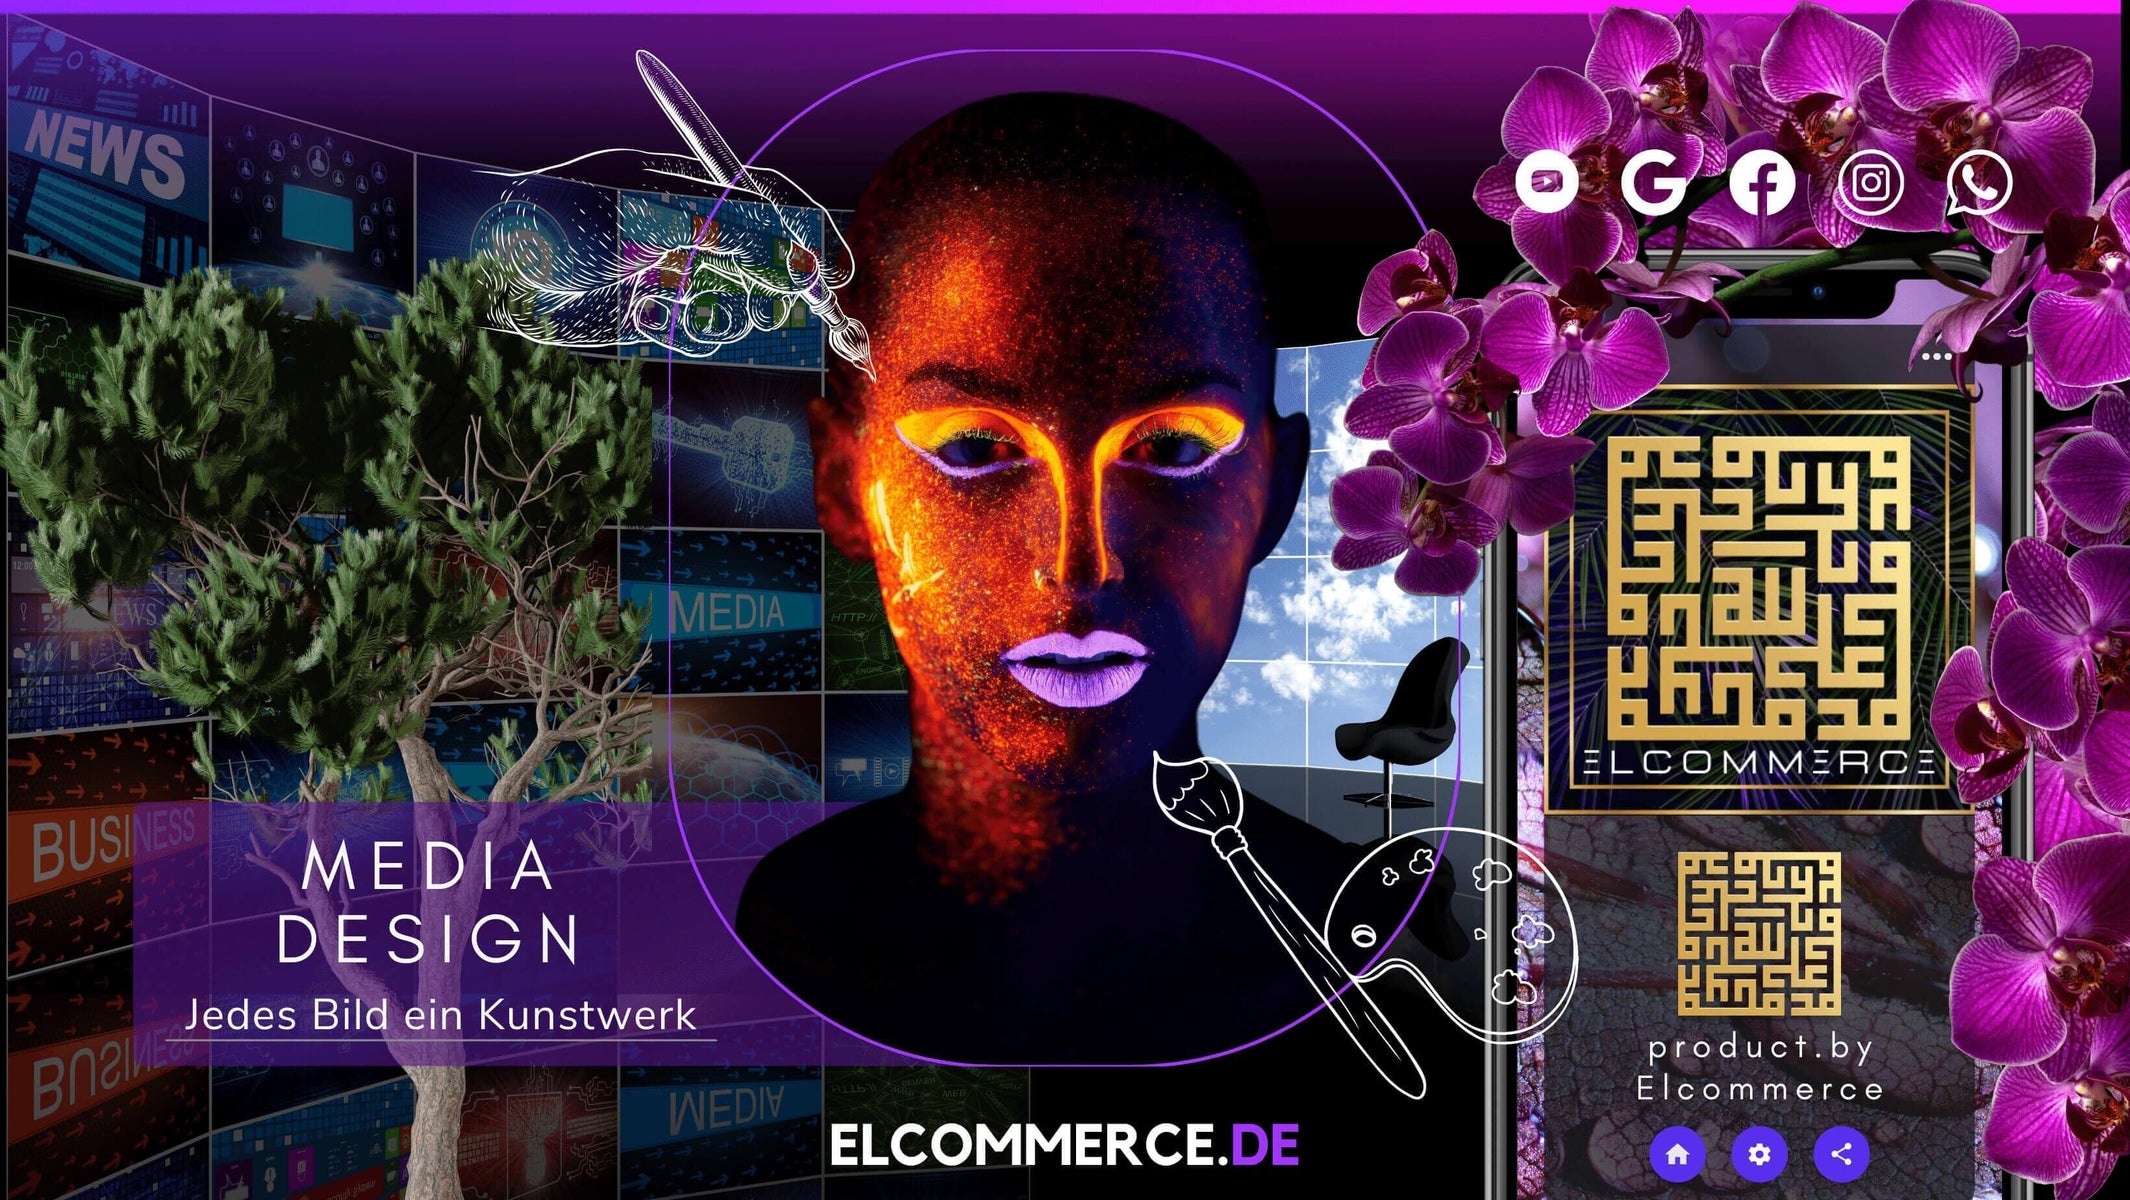 Prestige Performance Mediengestaltung & Grafikdesign, Elcommerce Media Design Product. by Elcommerce